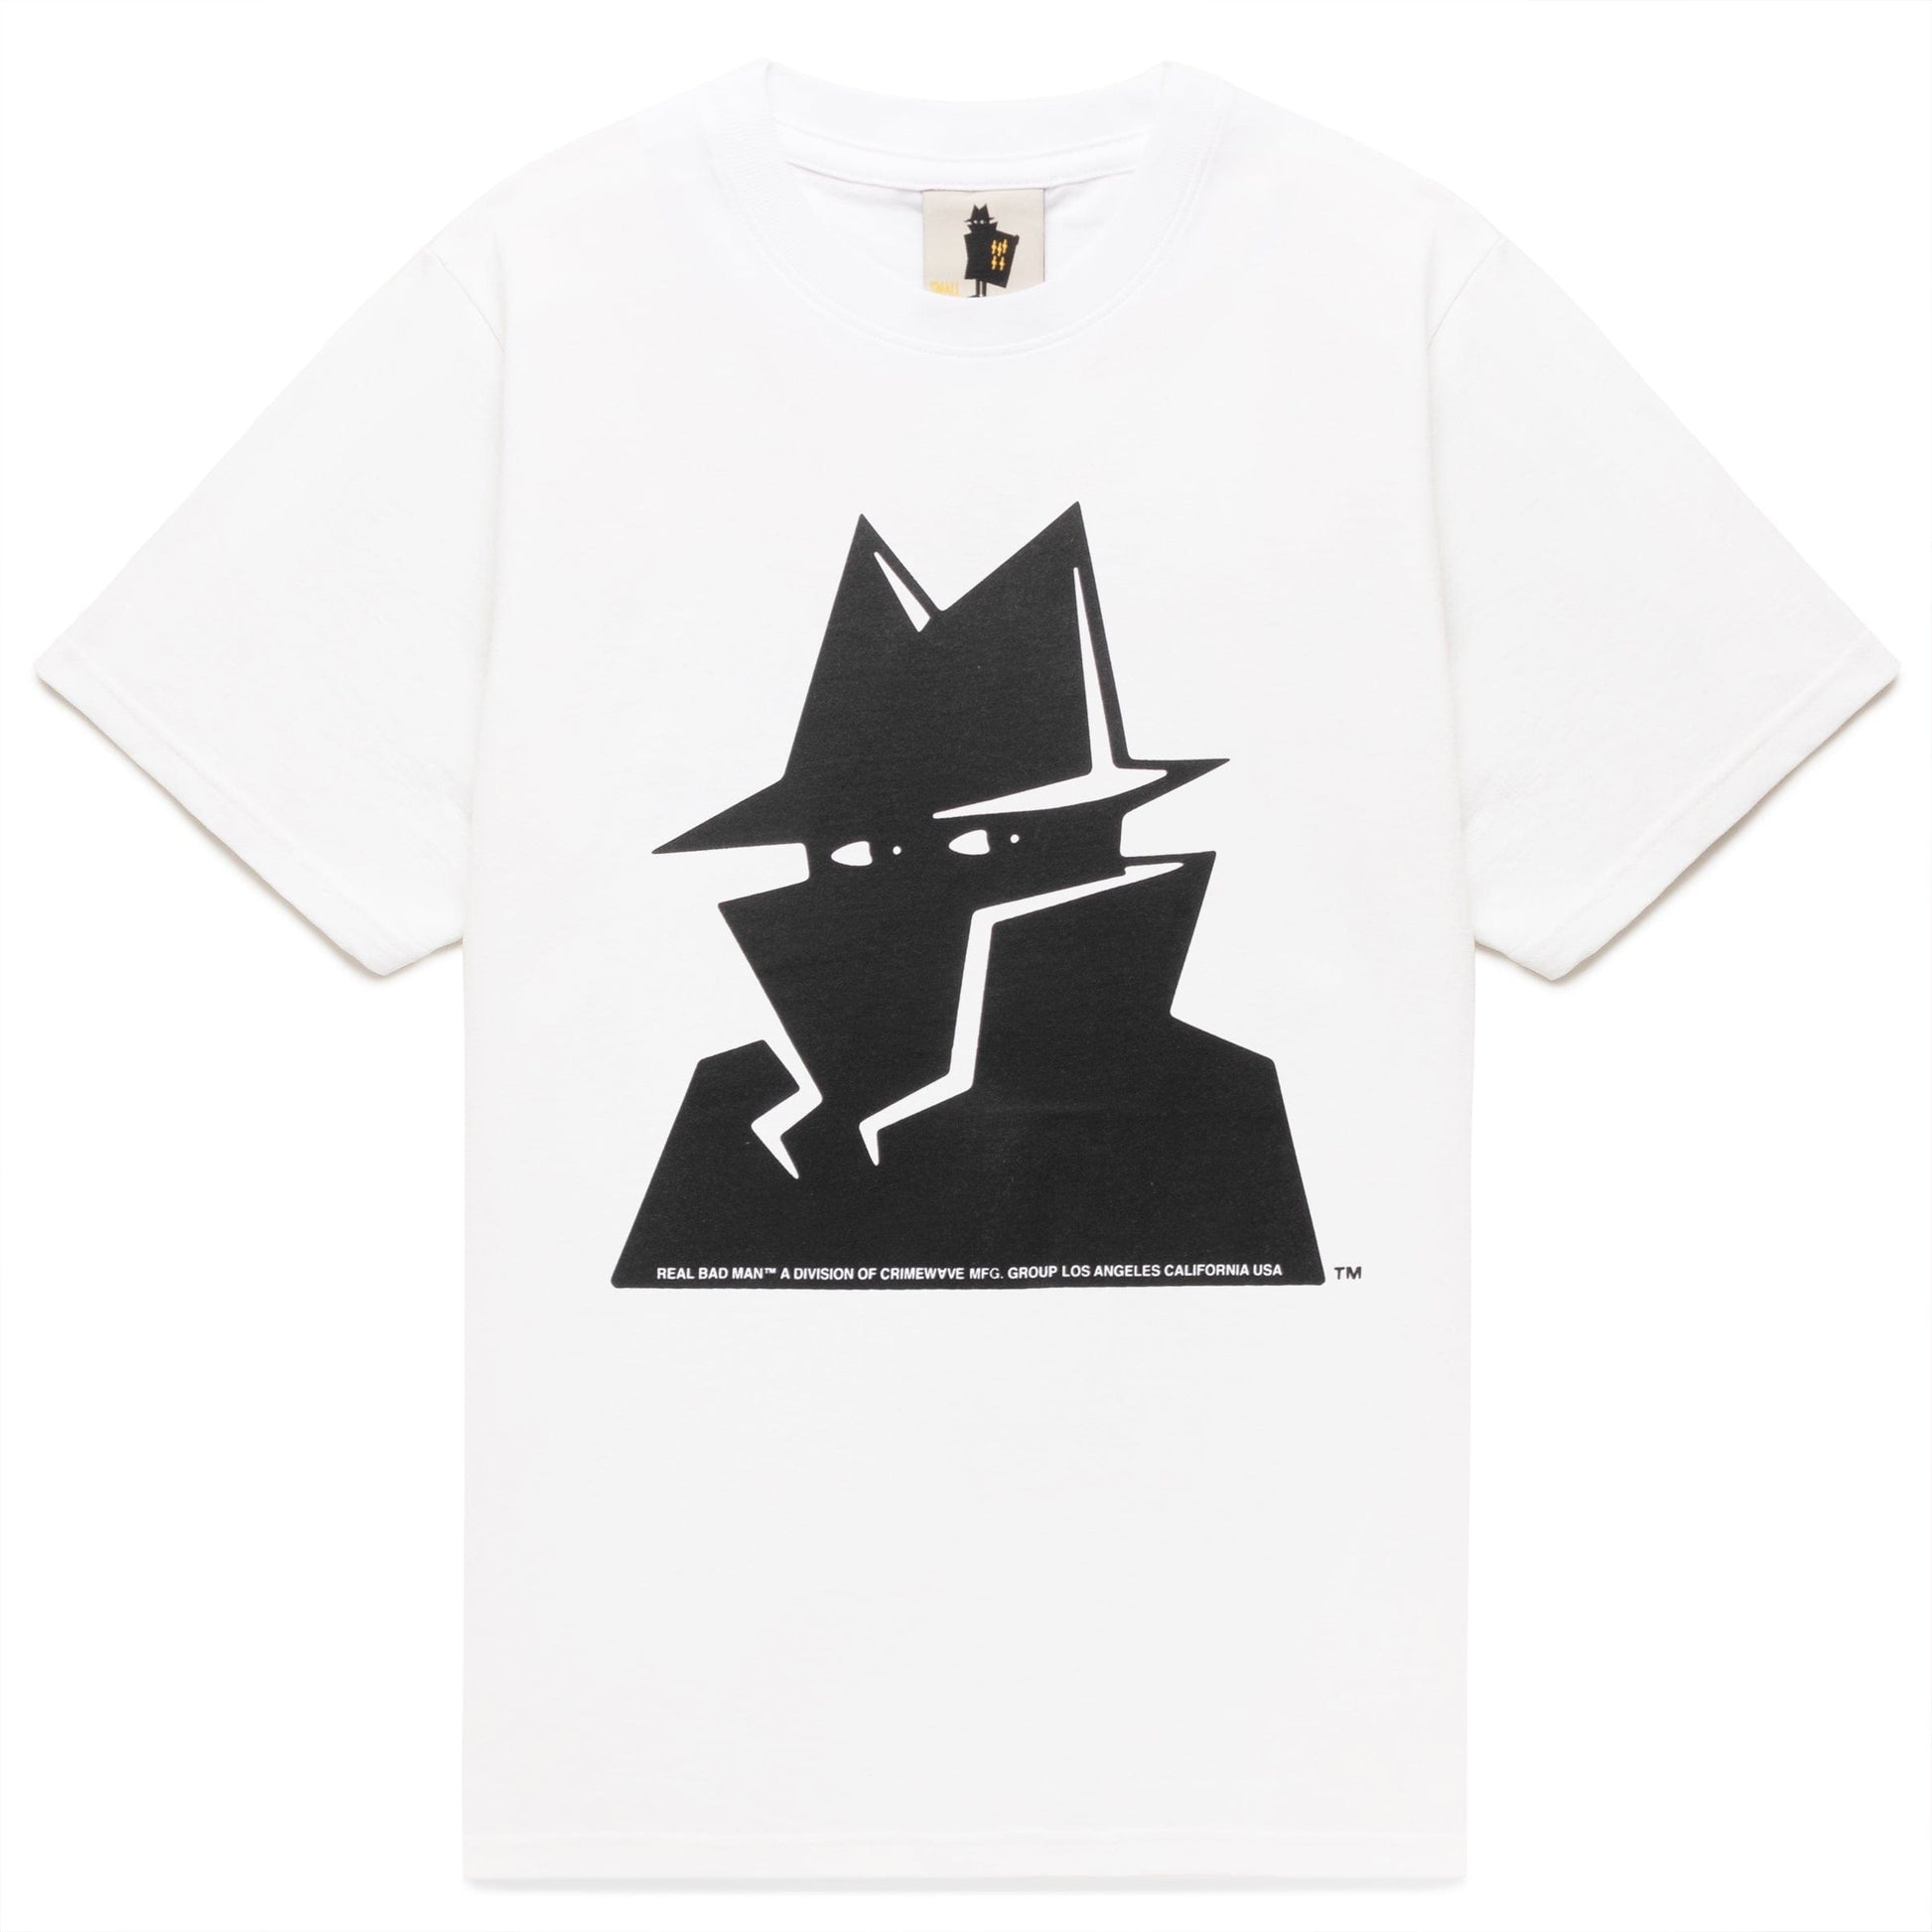 Culture The Ninja T-Shirt in Black Men XL - Streetwear -  - T-shirts XL